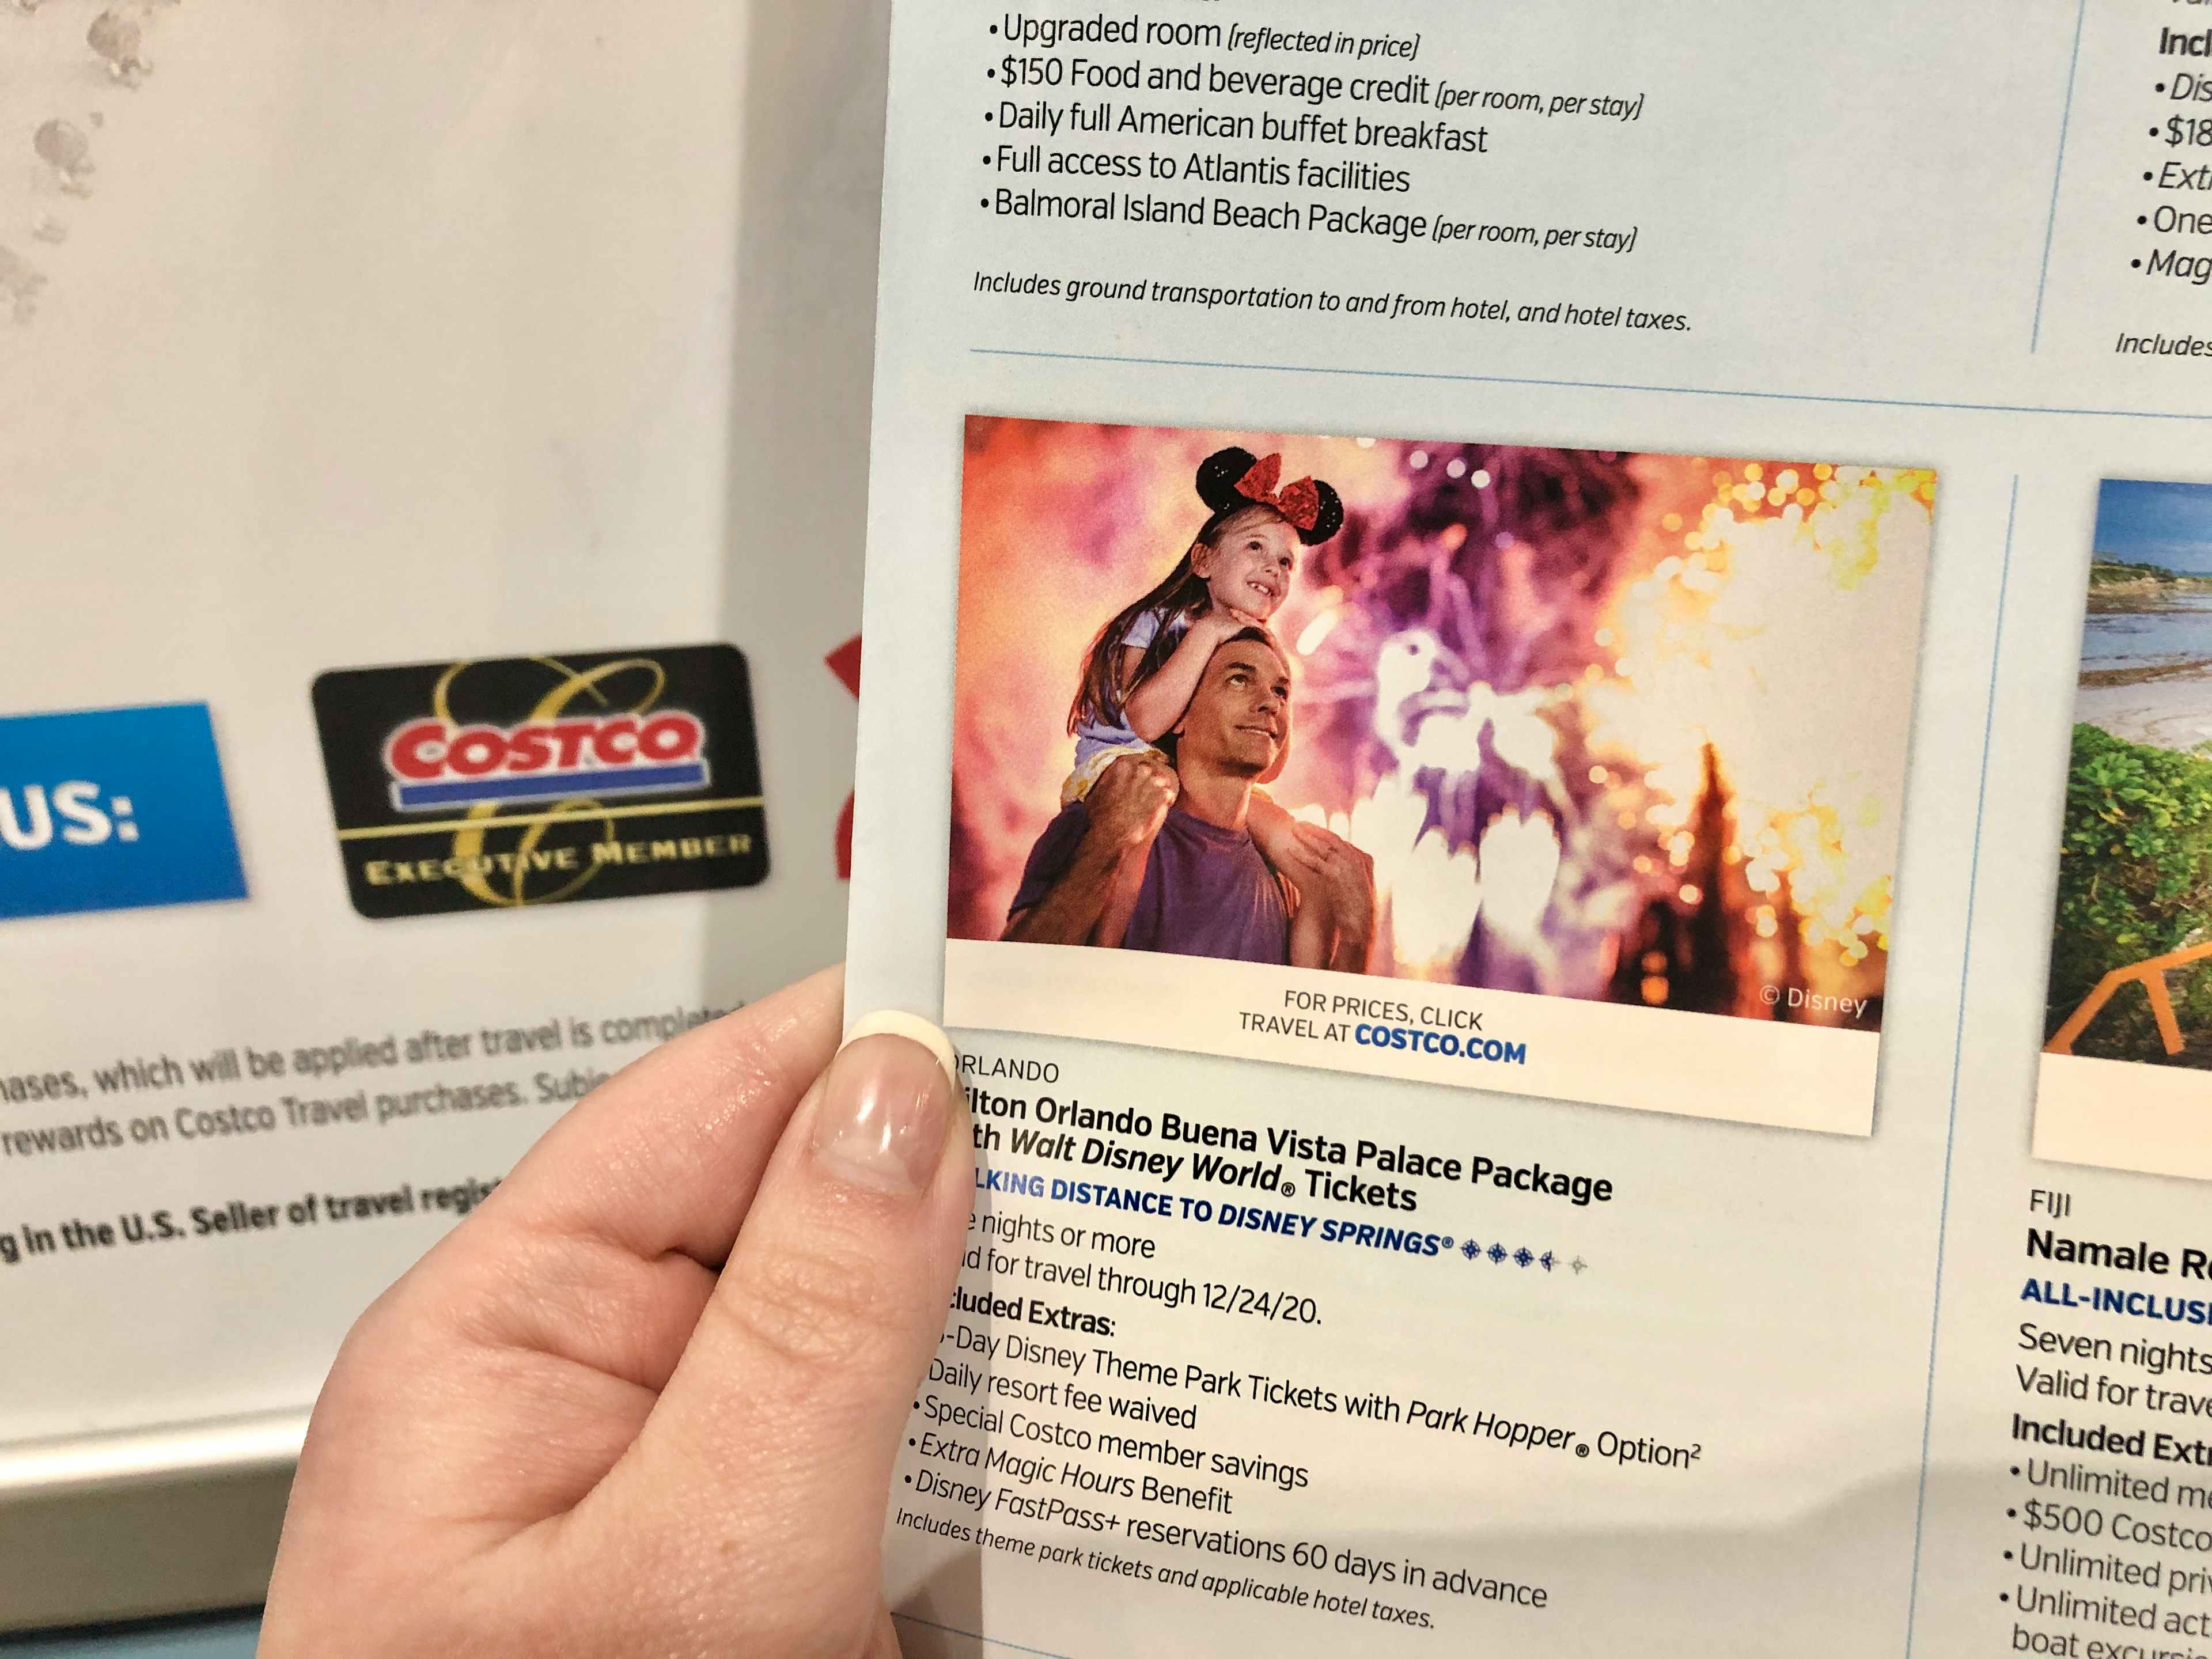 Costco travel program for Disney.